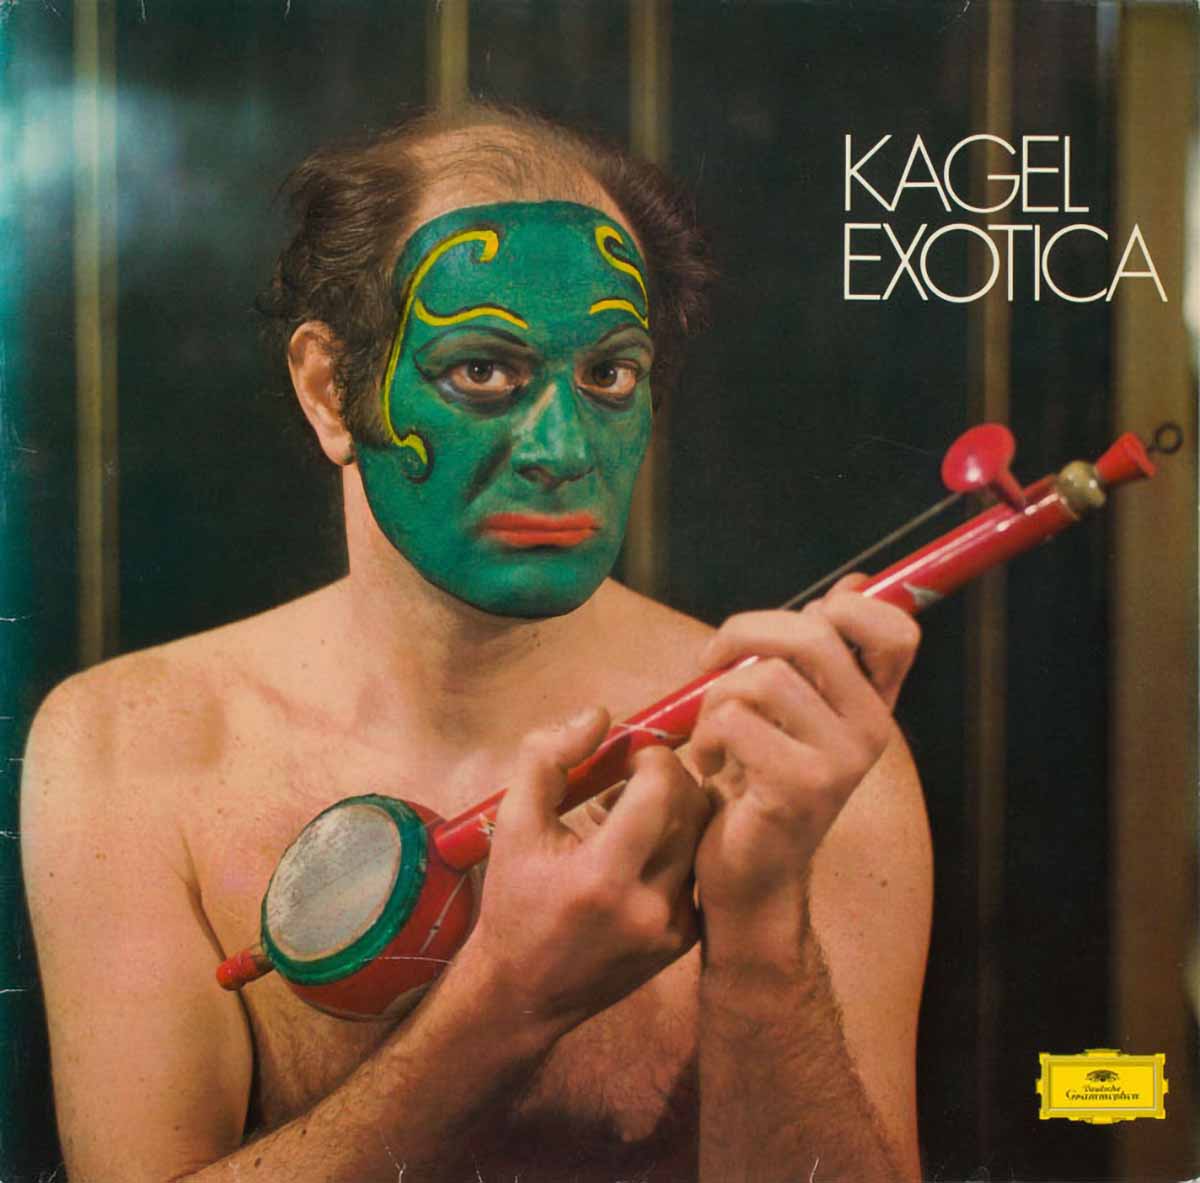 Foto: Zoltán Nagy, Mauricio Kagel auf dem Plattencover seiner "Exotica", 1972